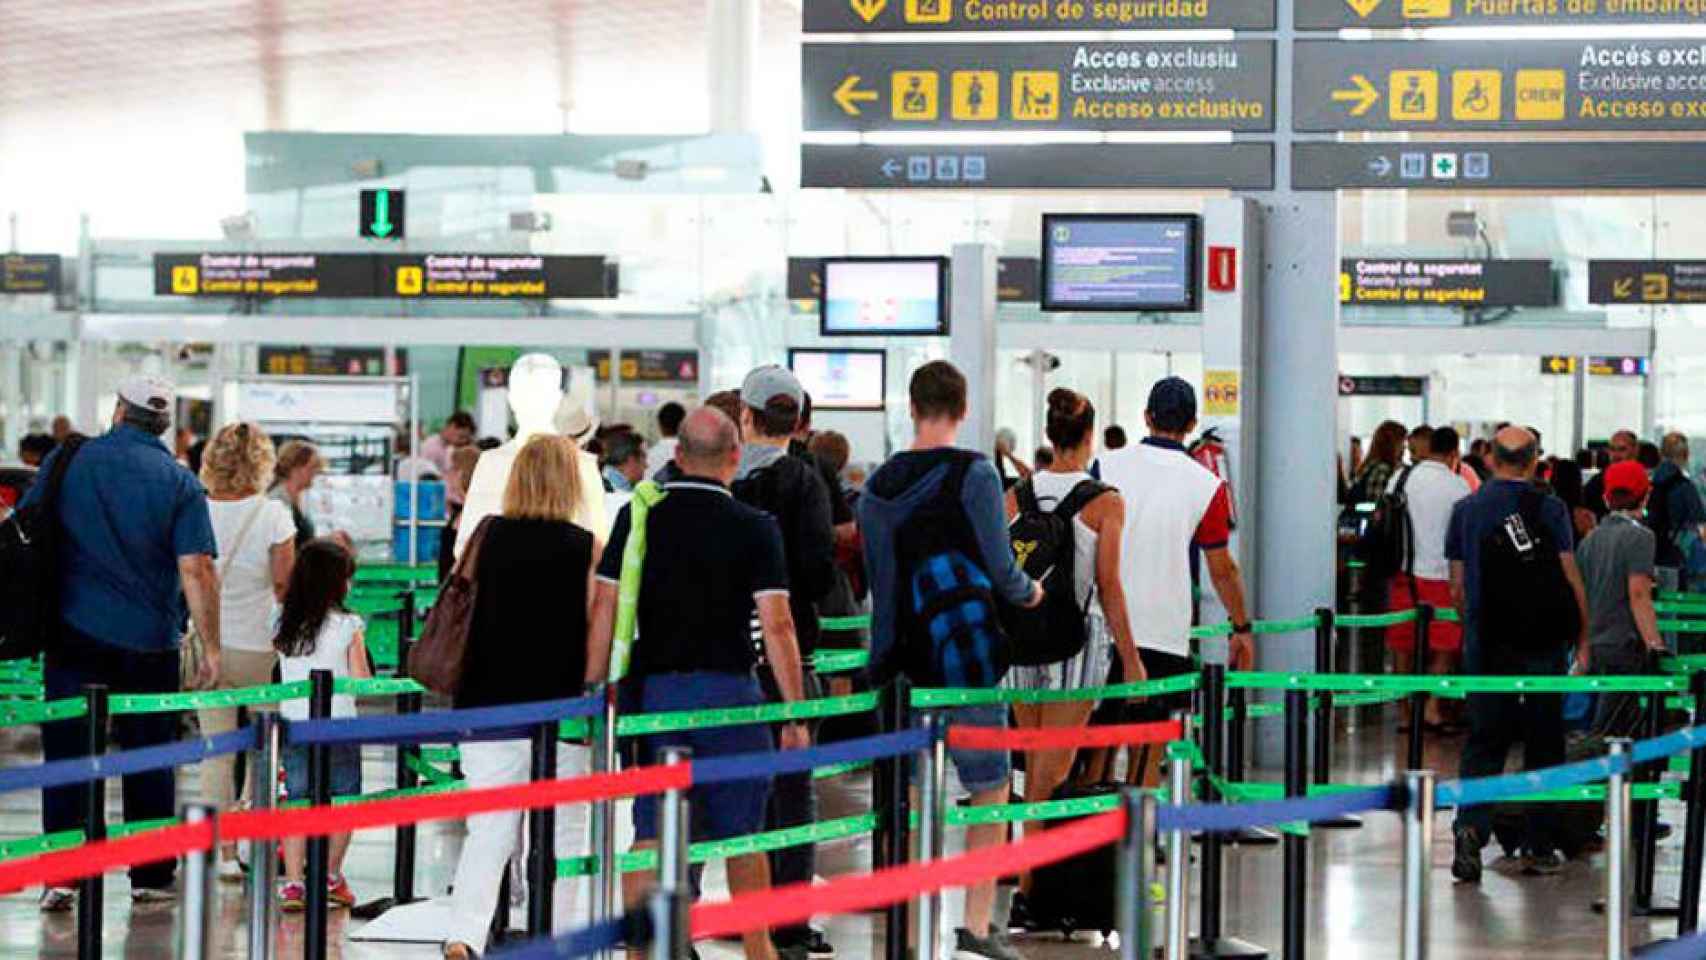 Imagen de los controles de seguridad del aeropuerto de El Prat de Barcelona / CG